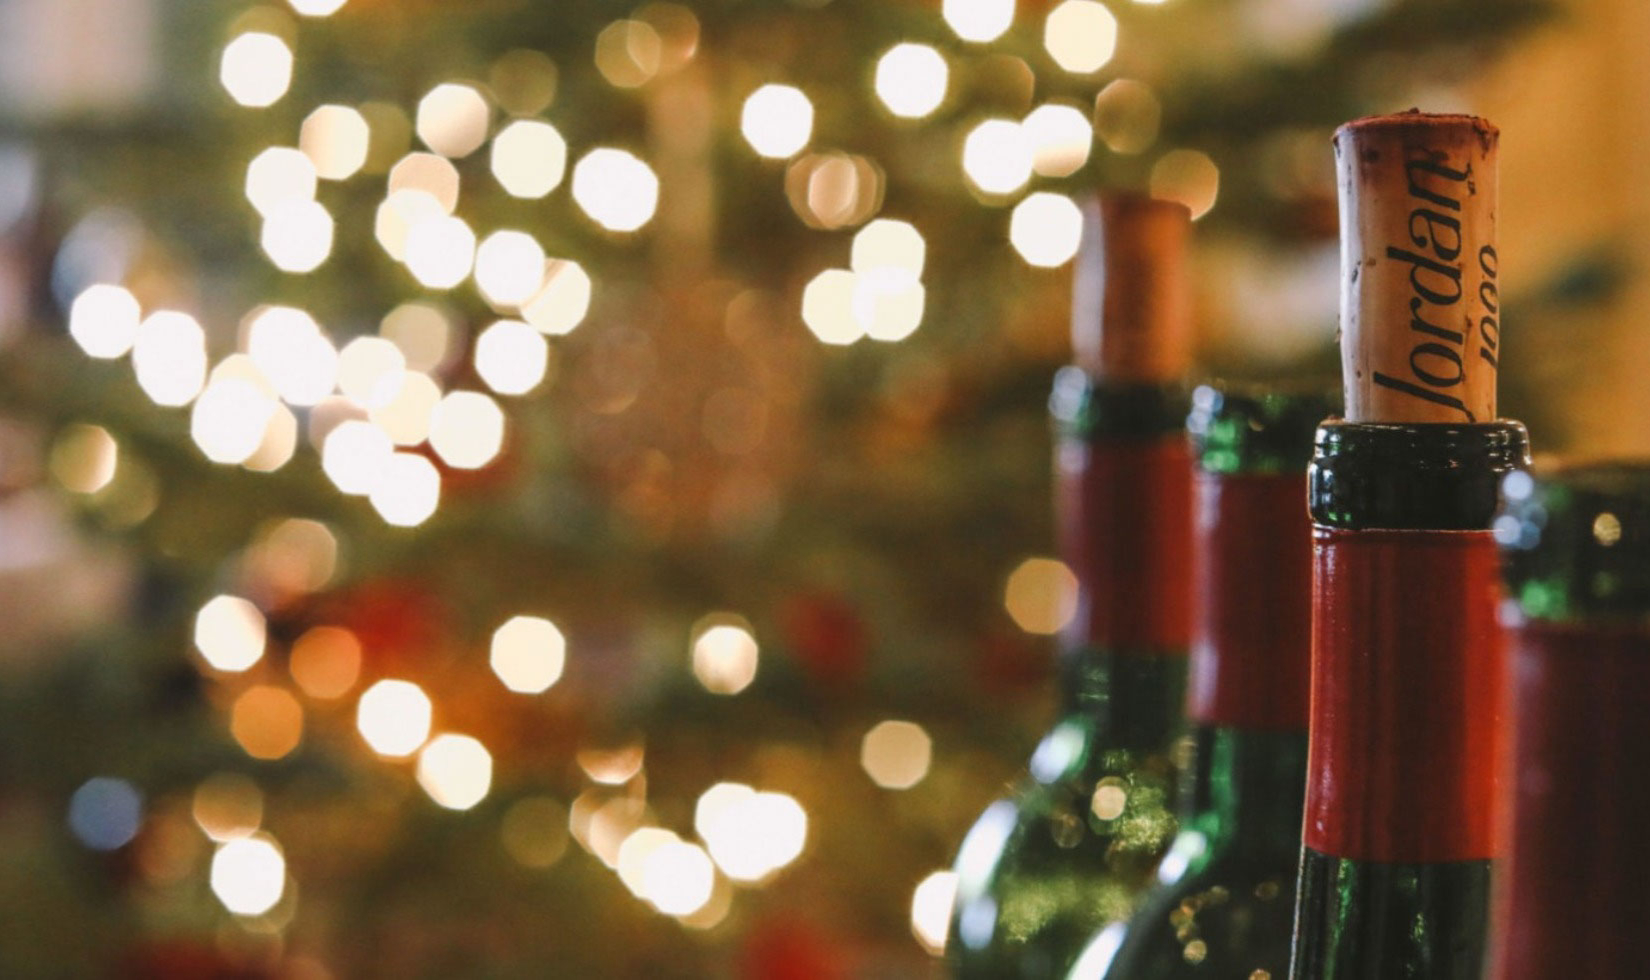 Jordan Cabernet bottle necks with corks in front of Christmas lights